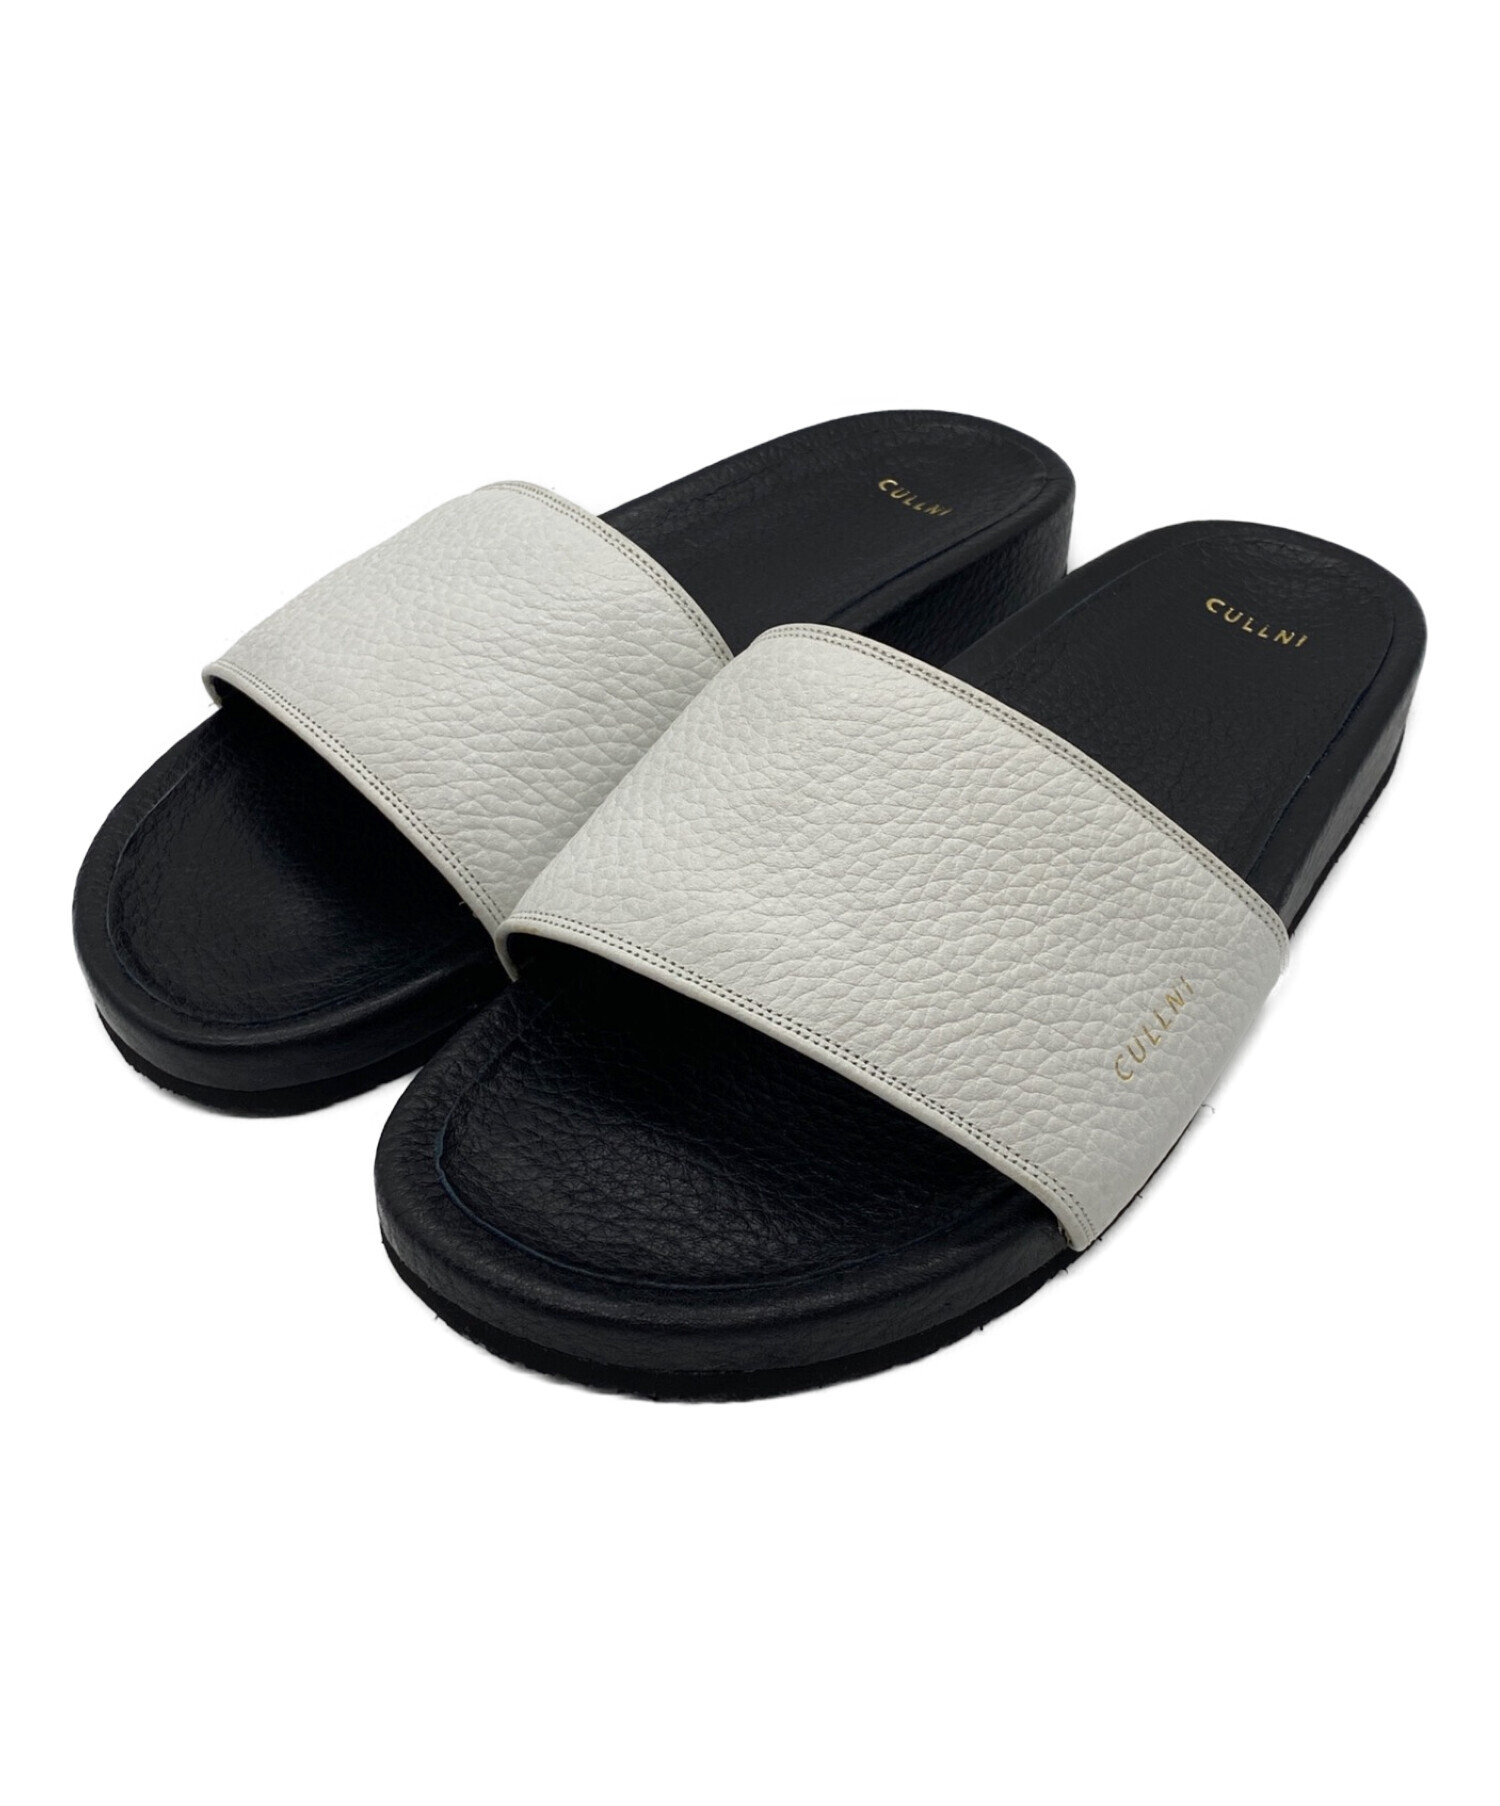 中古・古着通販】CULLNI (クルニ) Leather Shower Sandals ブラック